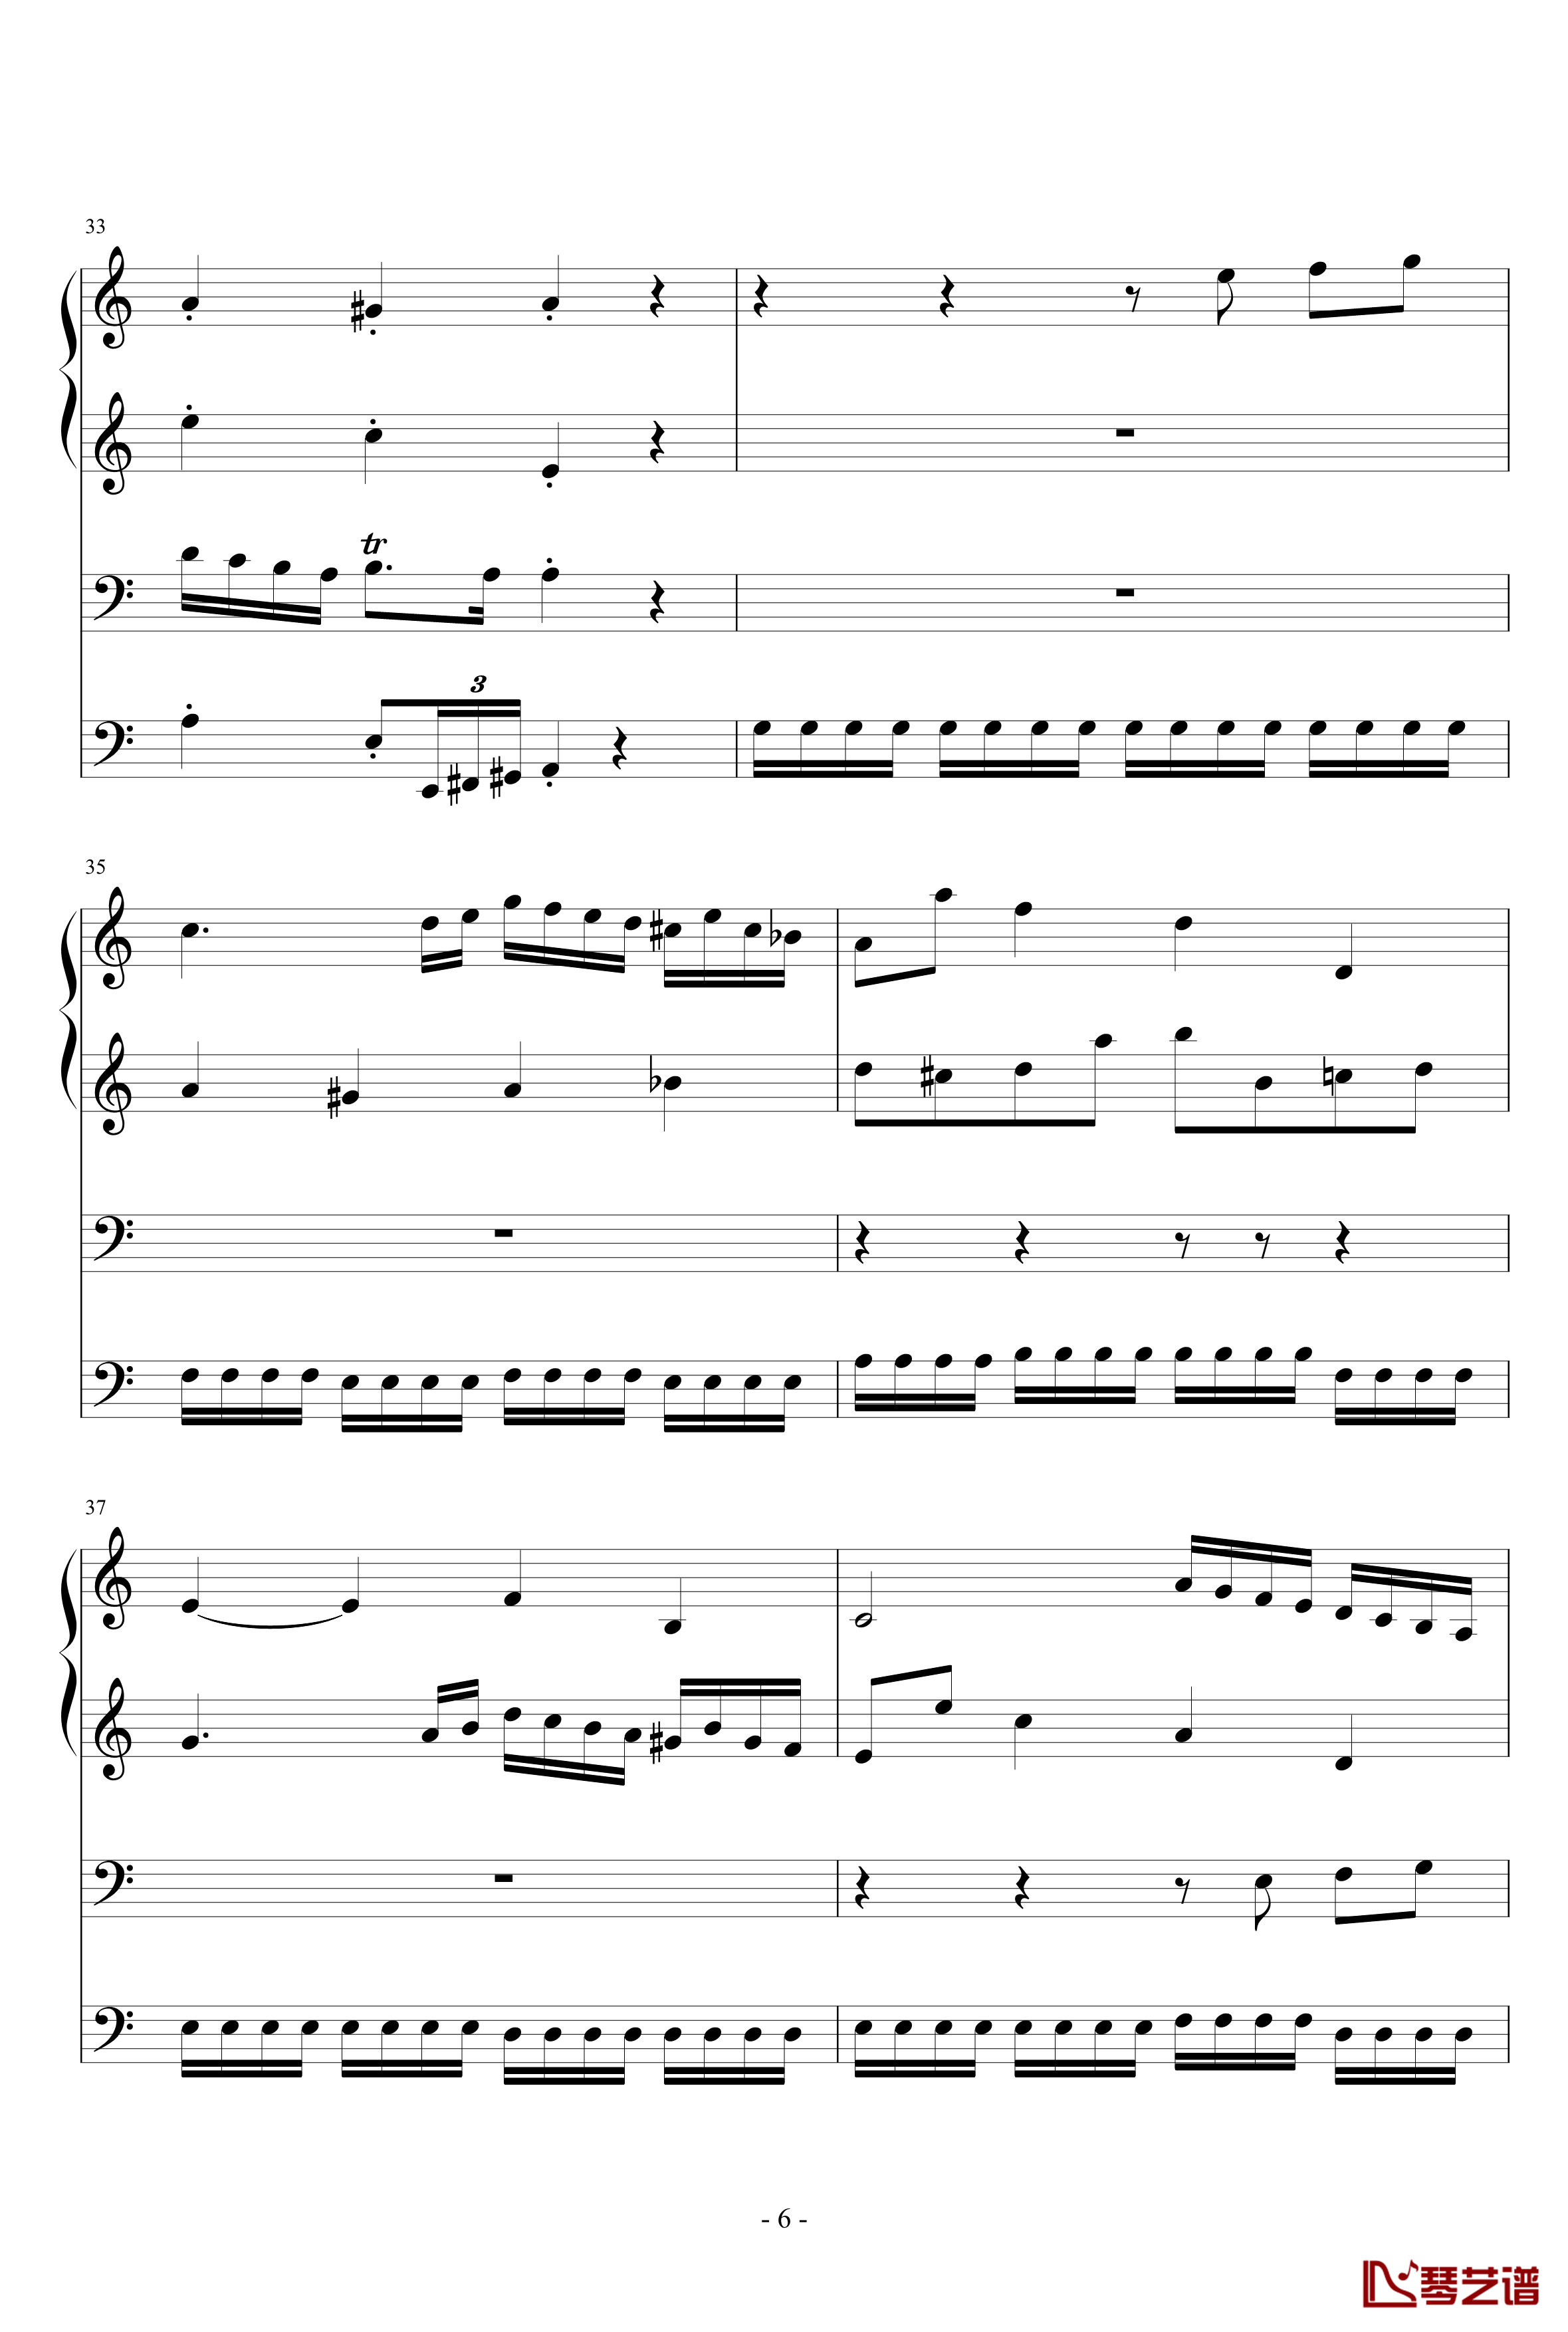 伪赋格钢琴谱-wudildy6